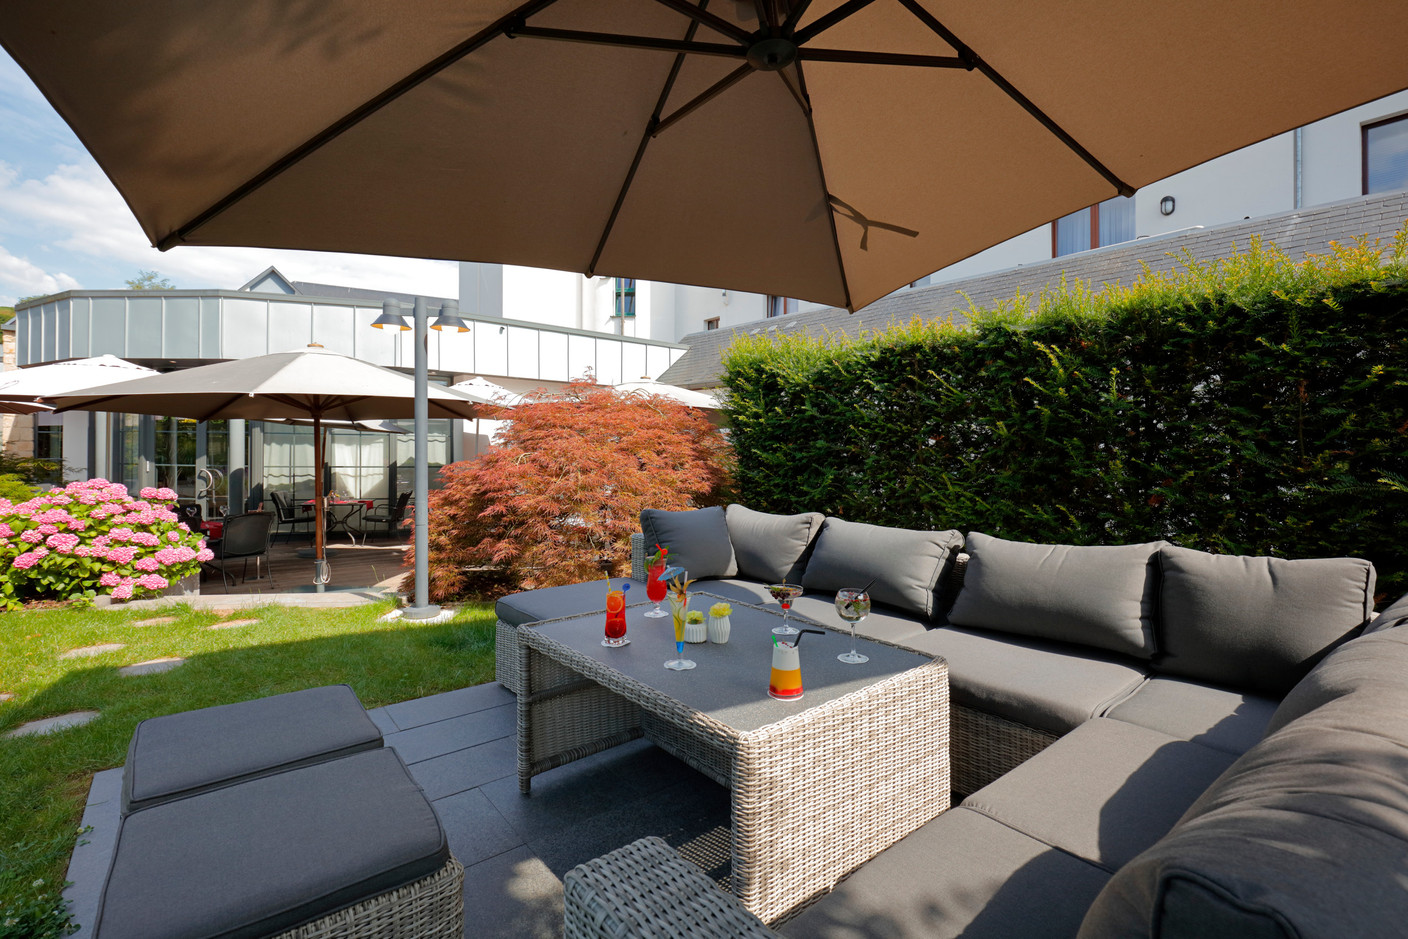 Par beau temps, on se précipitera sur la terrasse ombragée dans la quiétude d’un jardin fleuri. (Photo: Maison Moderne)